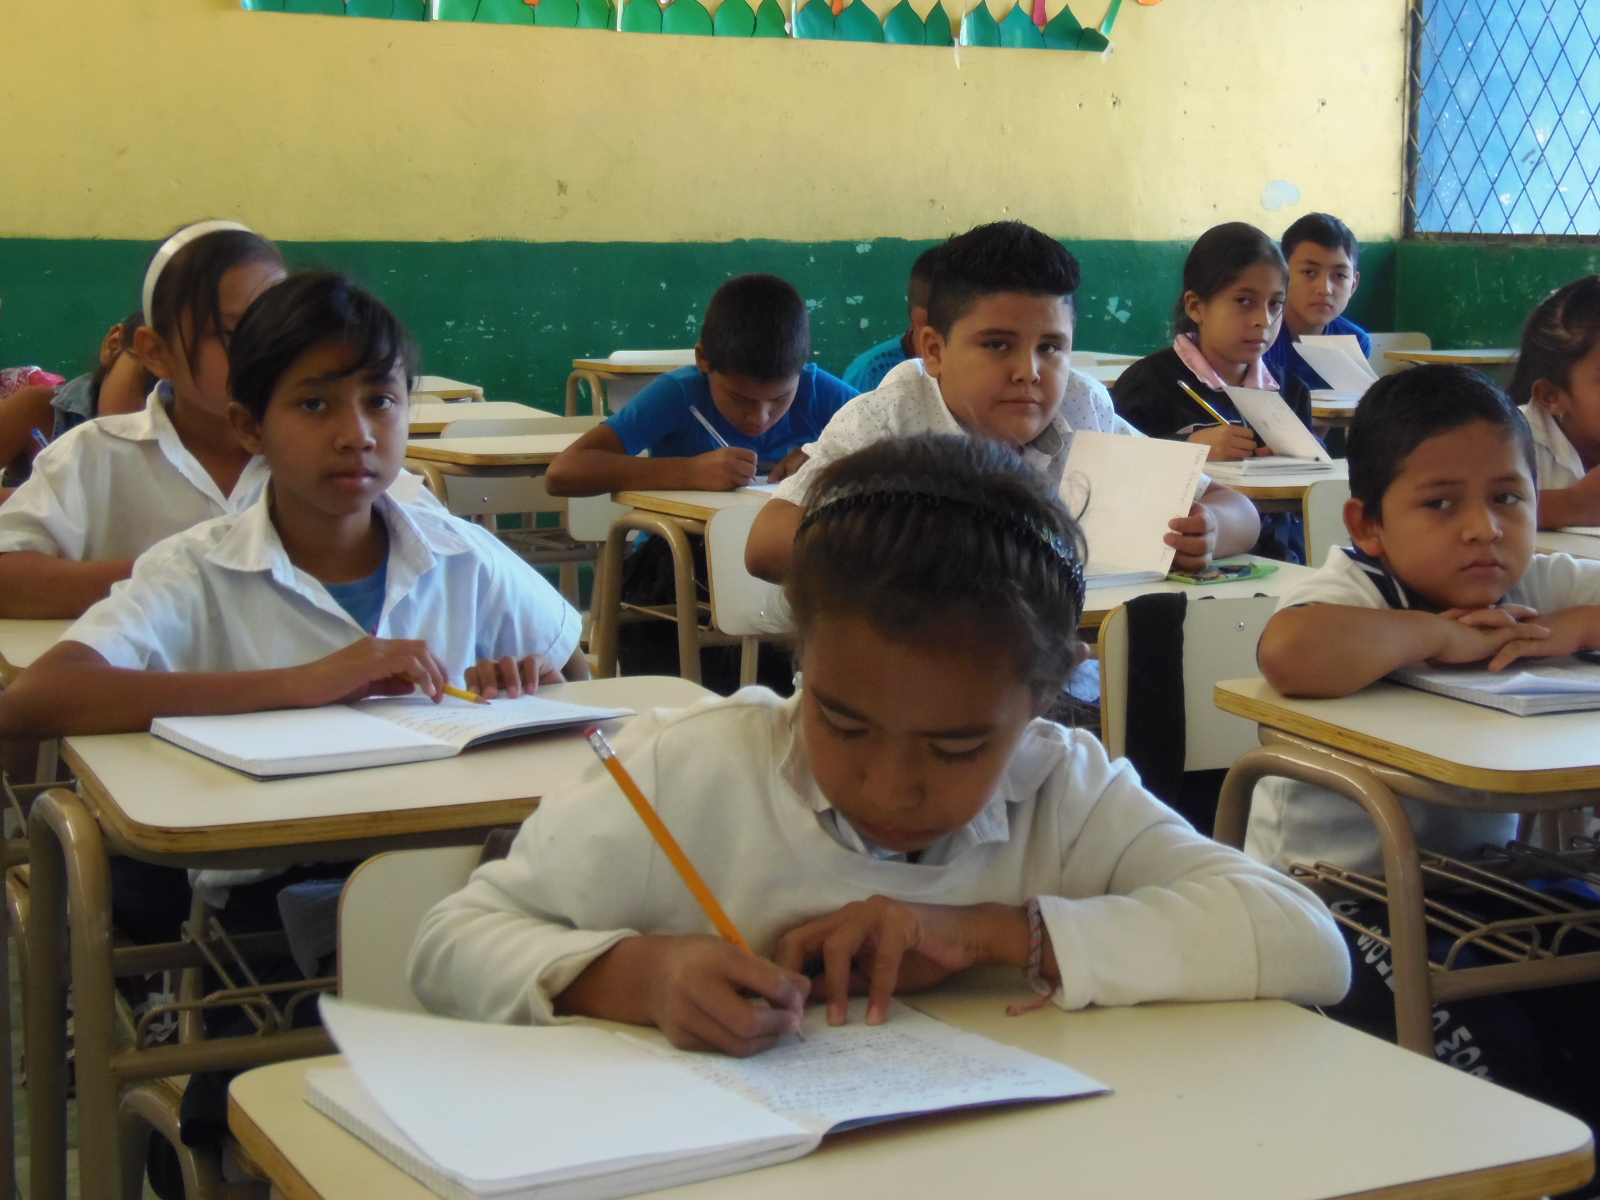 Año escolar 2018 en El Salvador, dio inicio el pasado 15 de enero